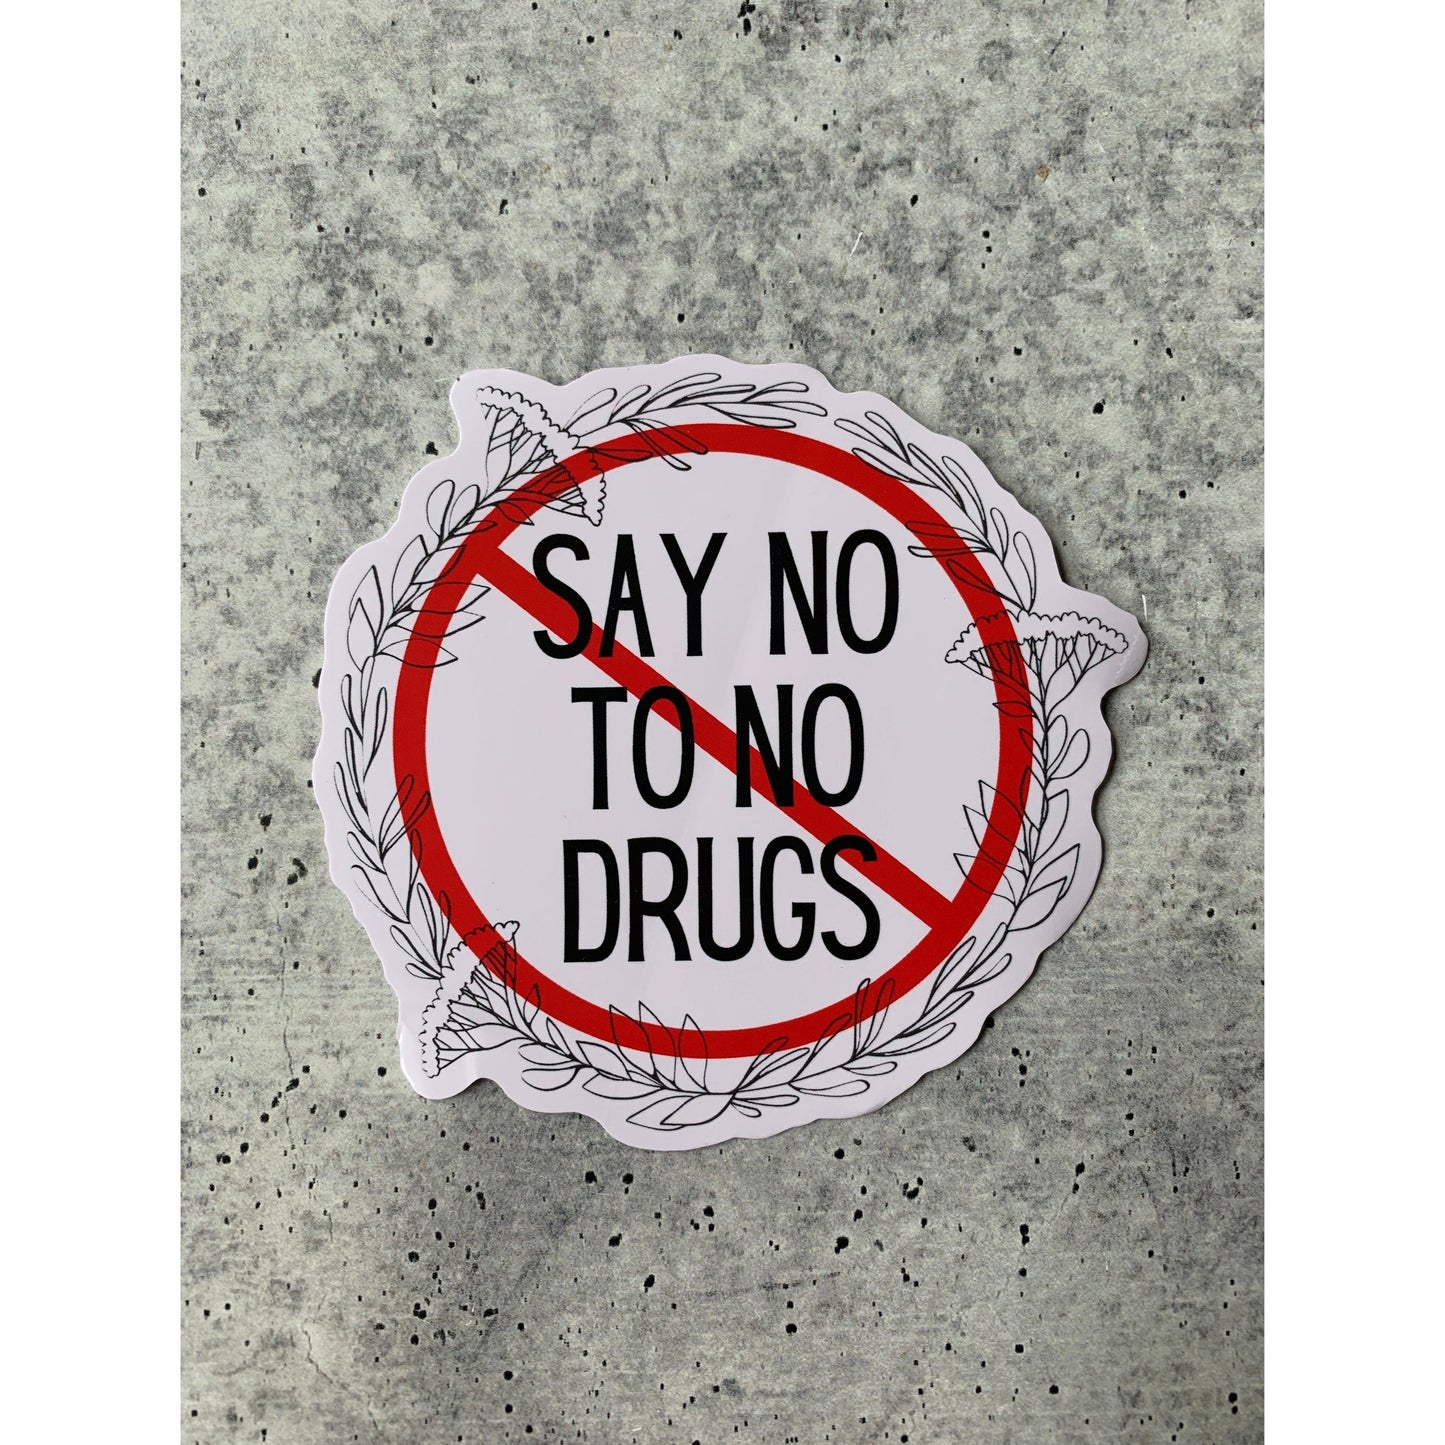 Say No To No Drugs Vinyl Die Cut Sticker